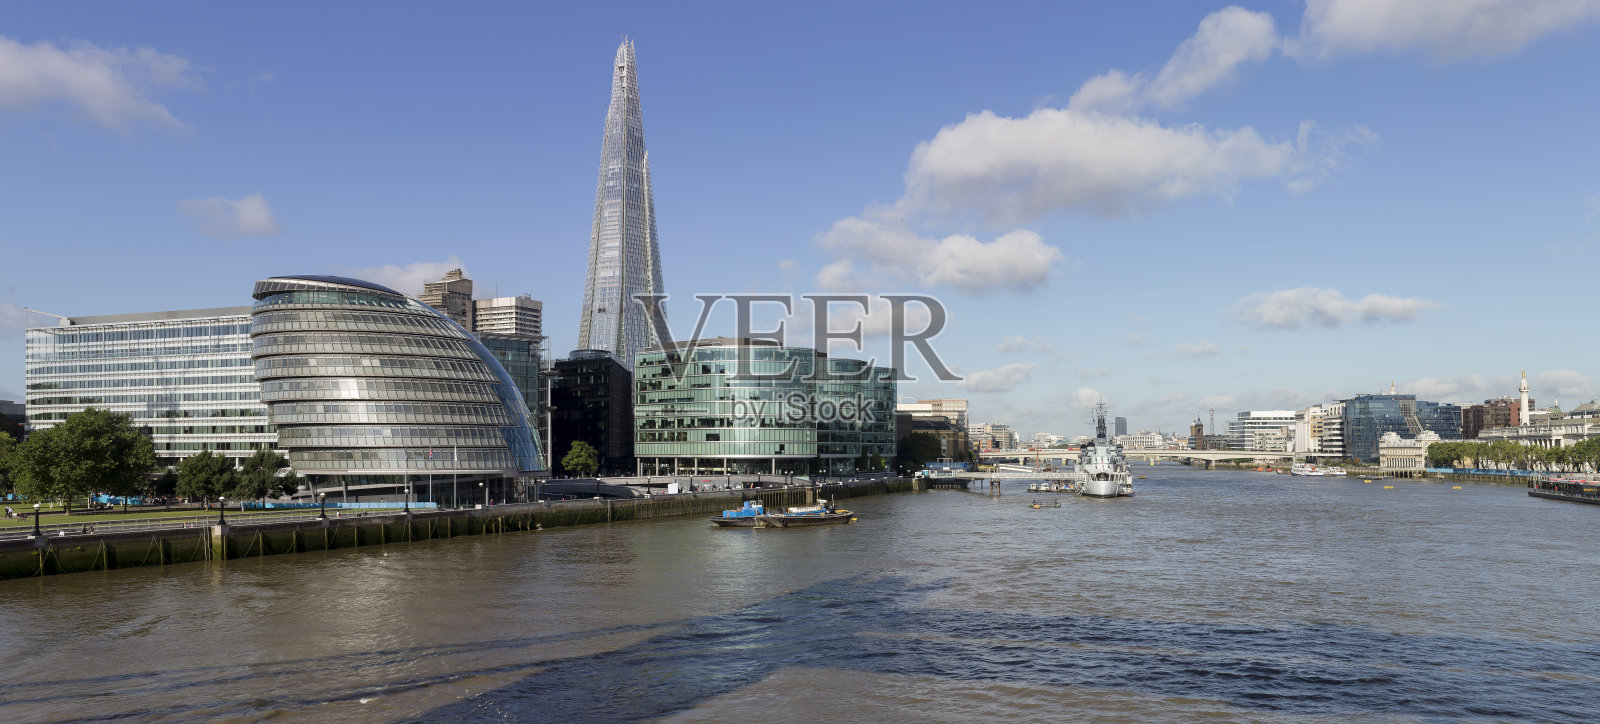 碎片大厦和伦敦桥的全景照片摄影图片